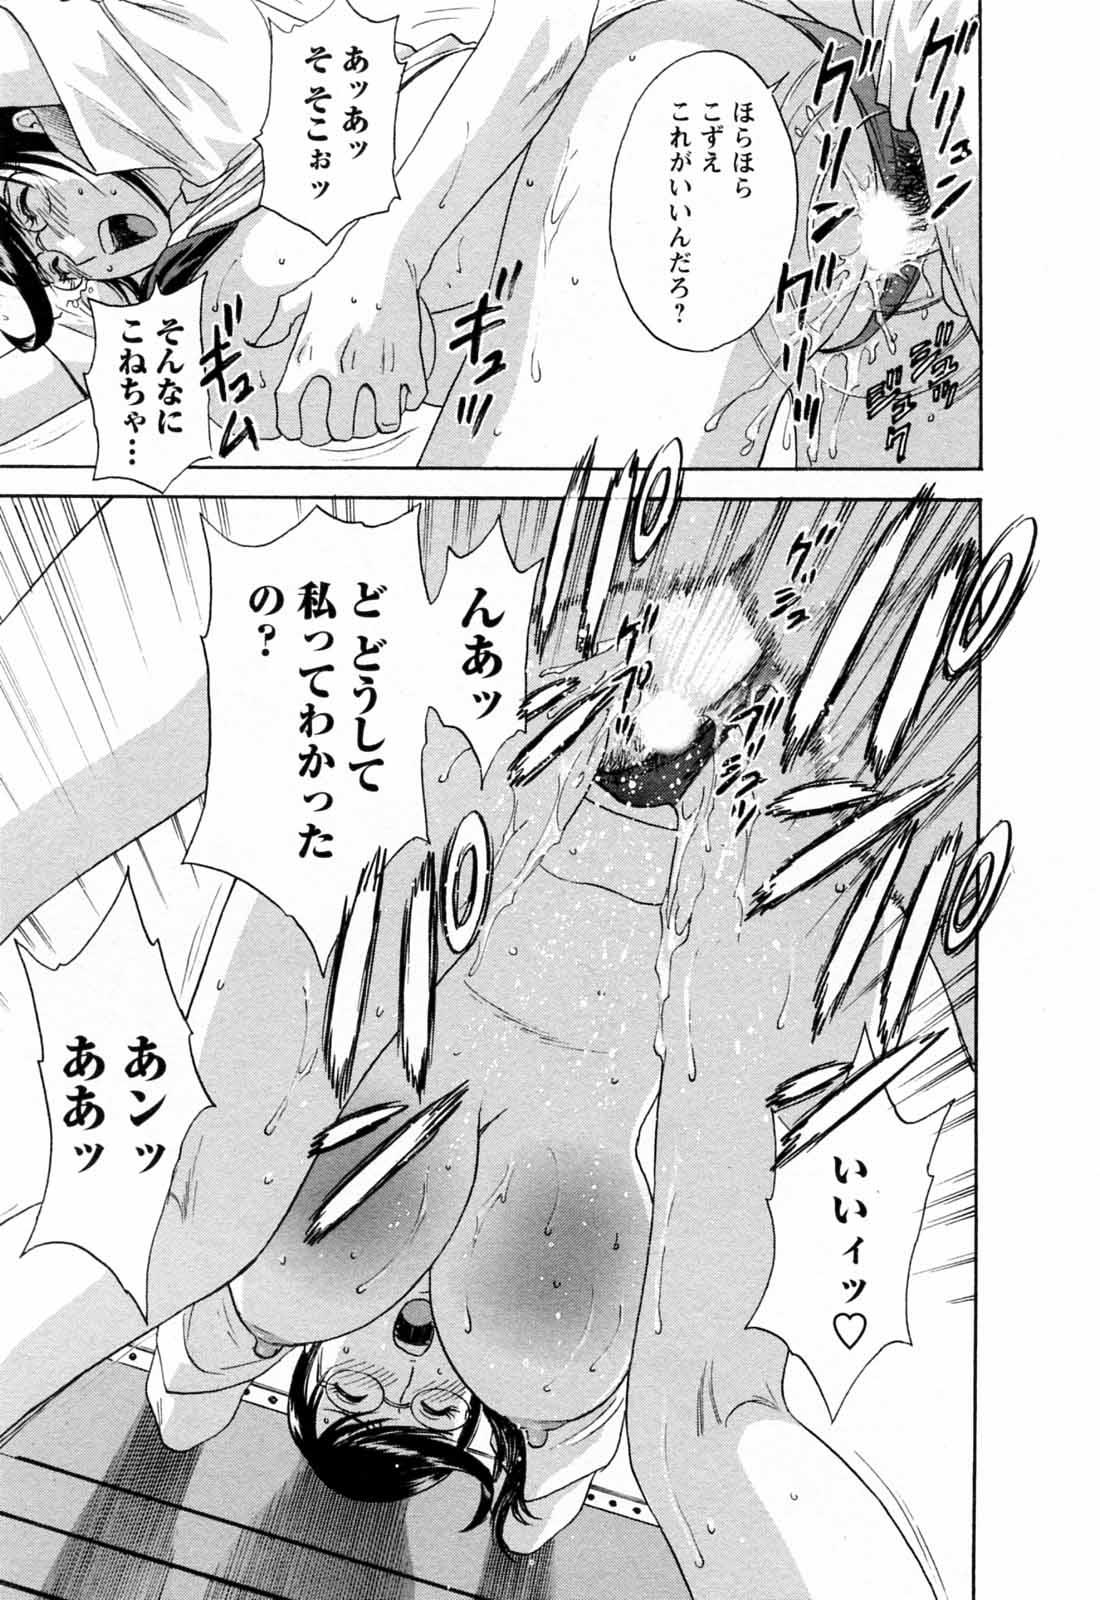 [Hidemaru] Mo-Retsu! Boin Sensei (Boing Boing Teacher) Vol.5 168